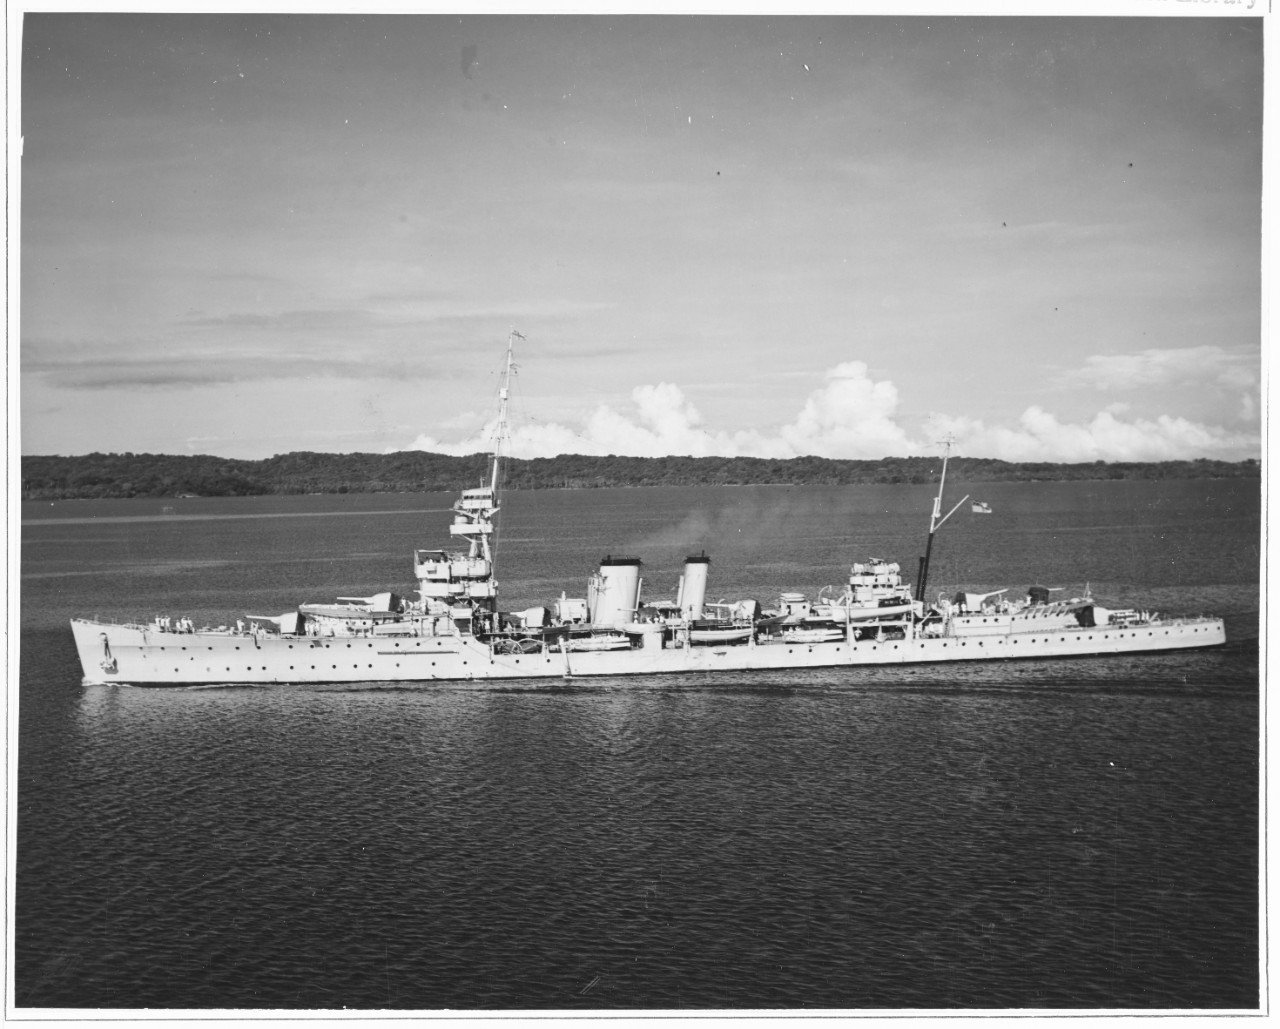 HMS DESPATCH (British Cruiser, 1919)